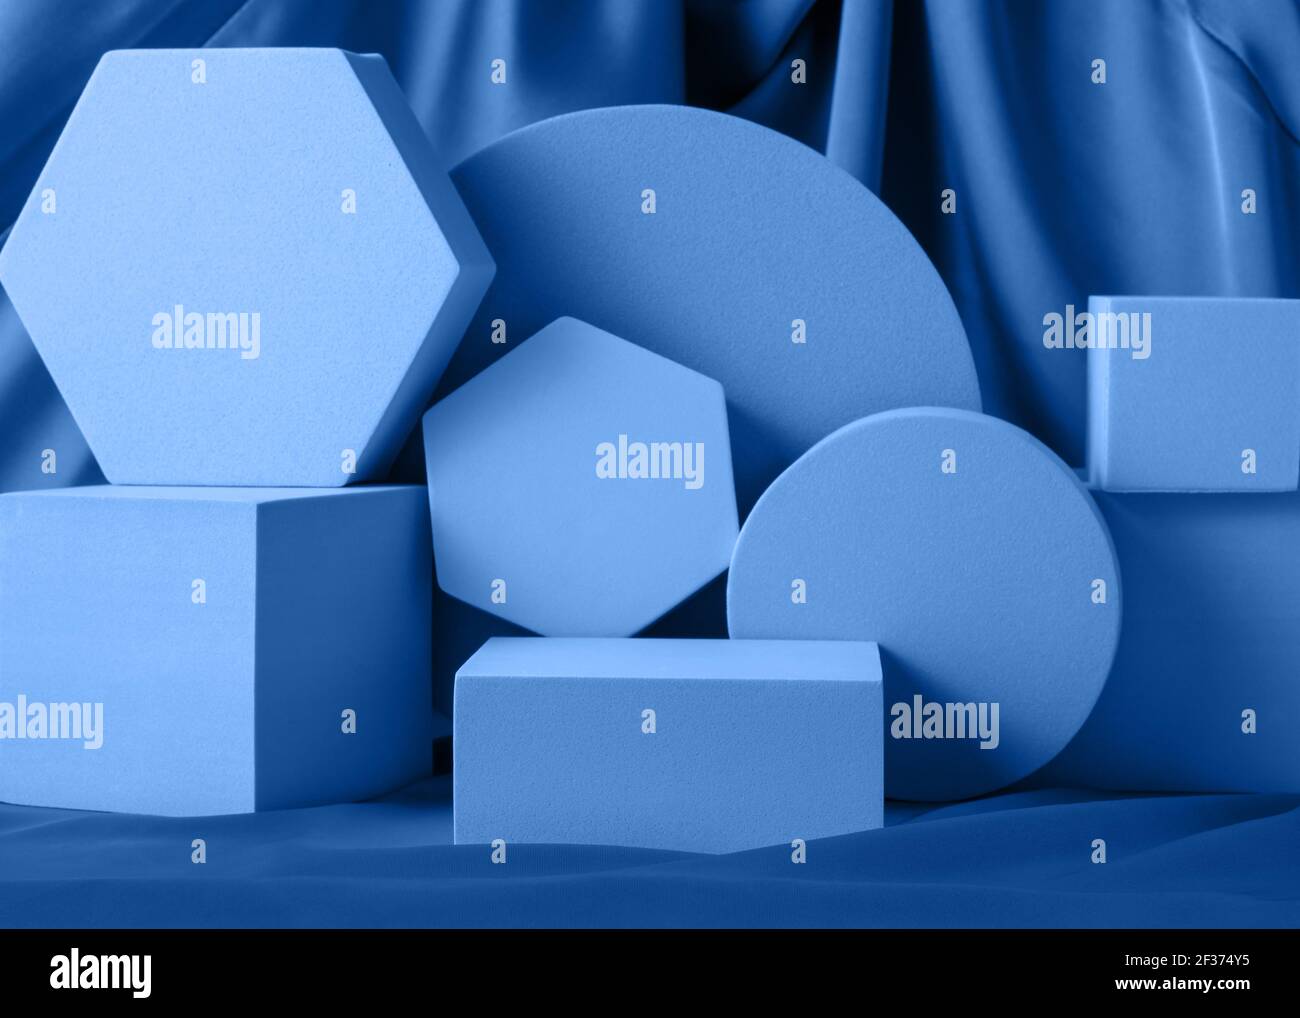 Formes géométriques, support bleu nuit, maquette de podium pour la présentation des produits sur fond de soie Banque D'Images